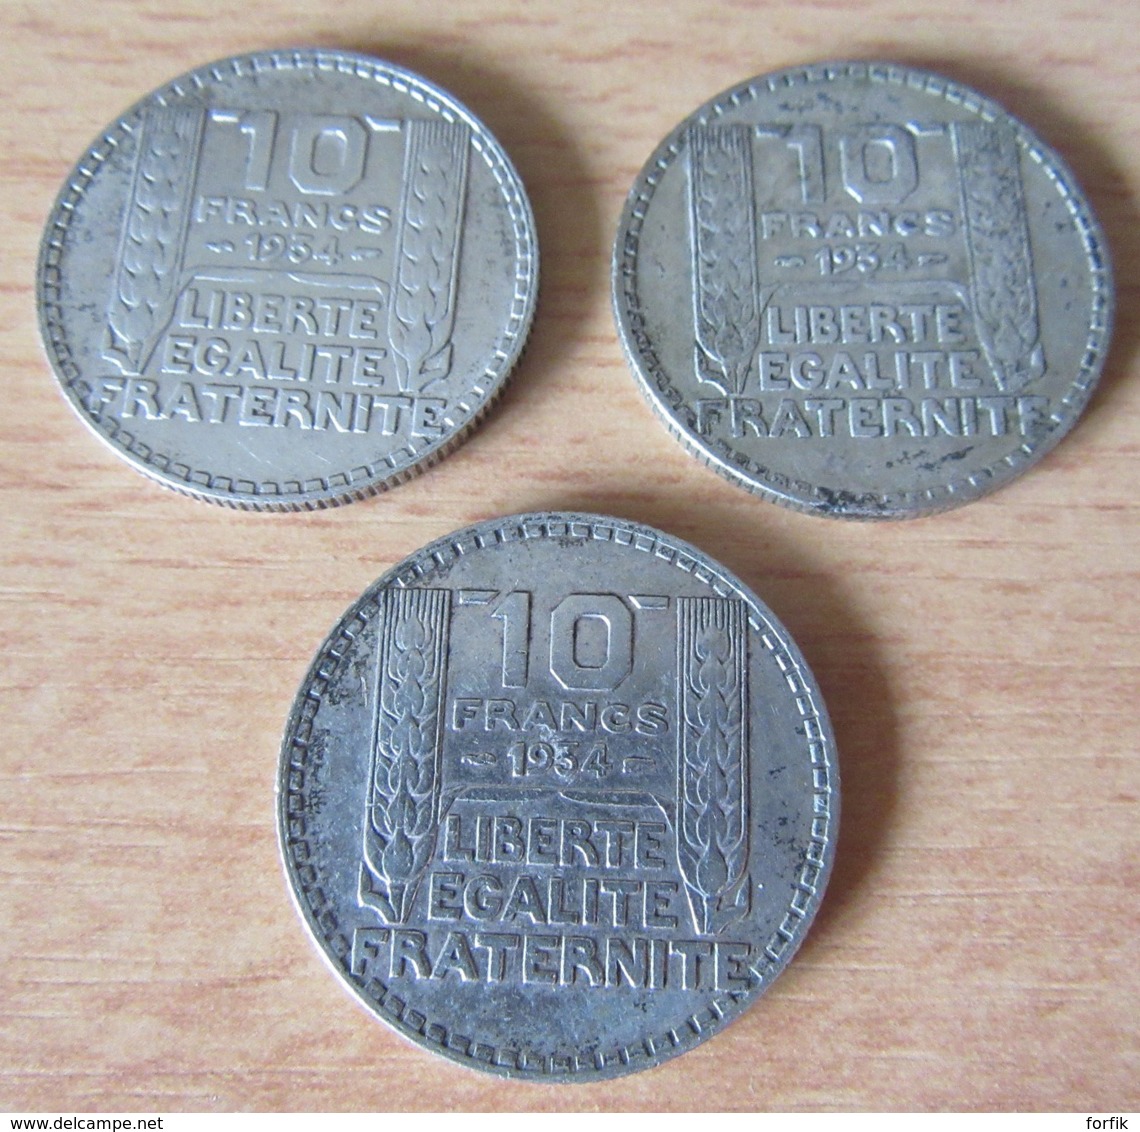 Achat immédiat - France - Lot de 14 Monnaies 10 Francs Turin en Argent - 1929 à 1934